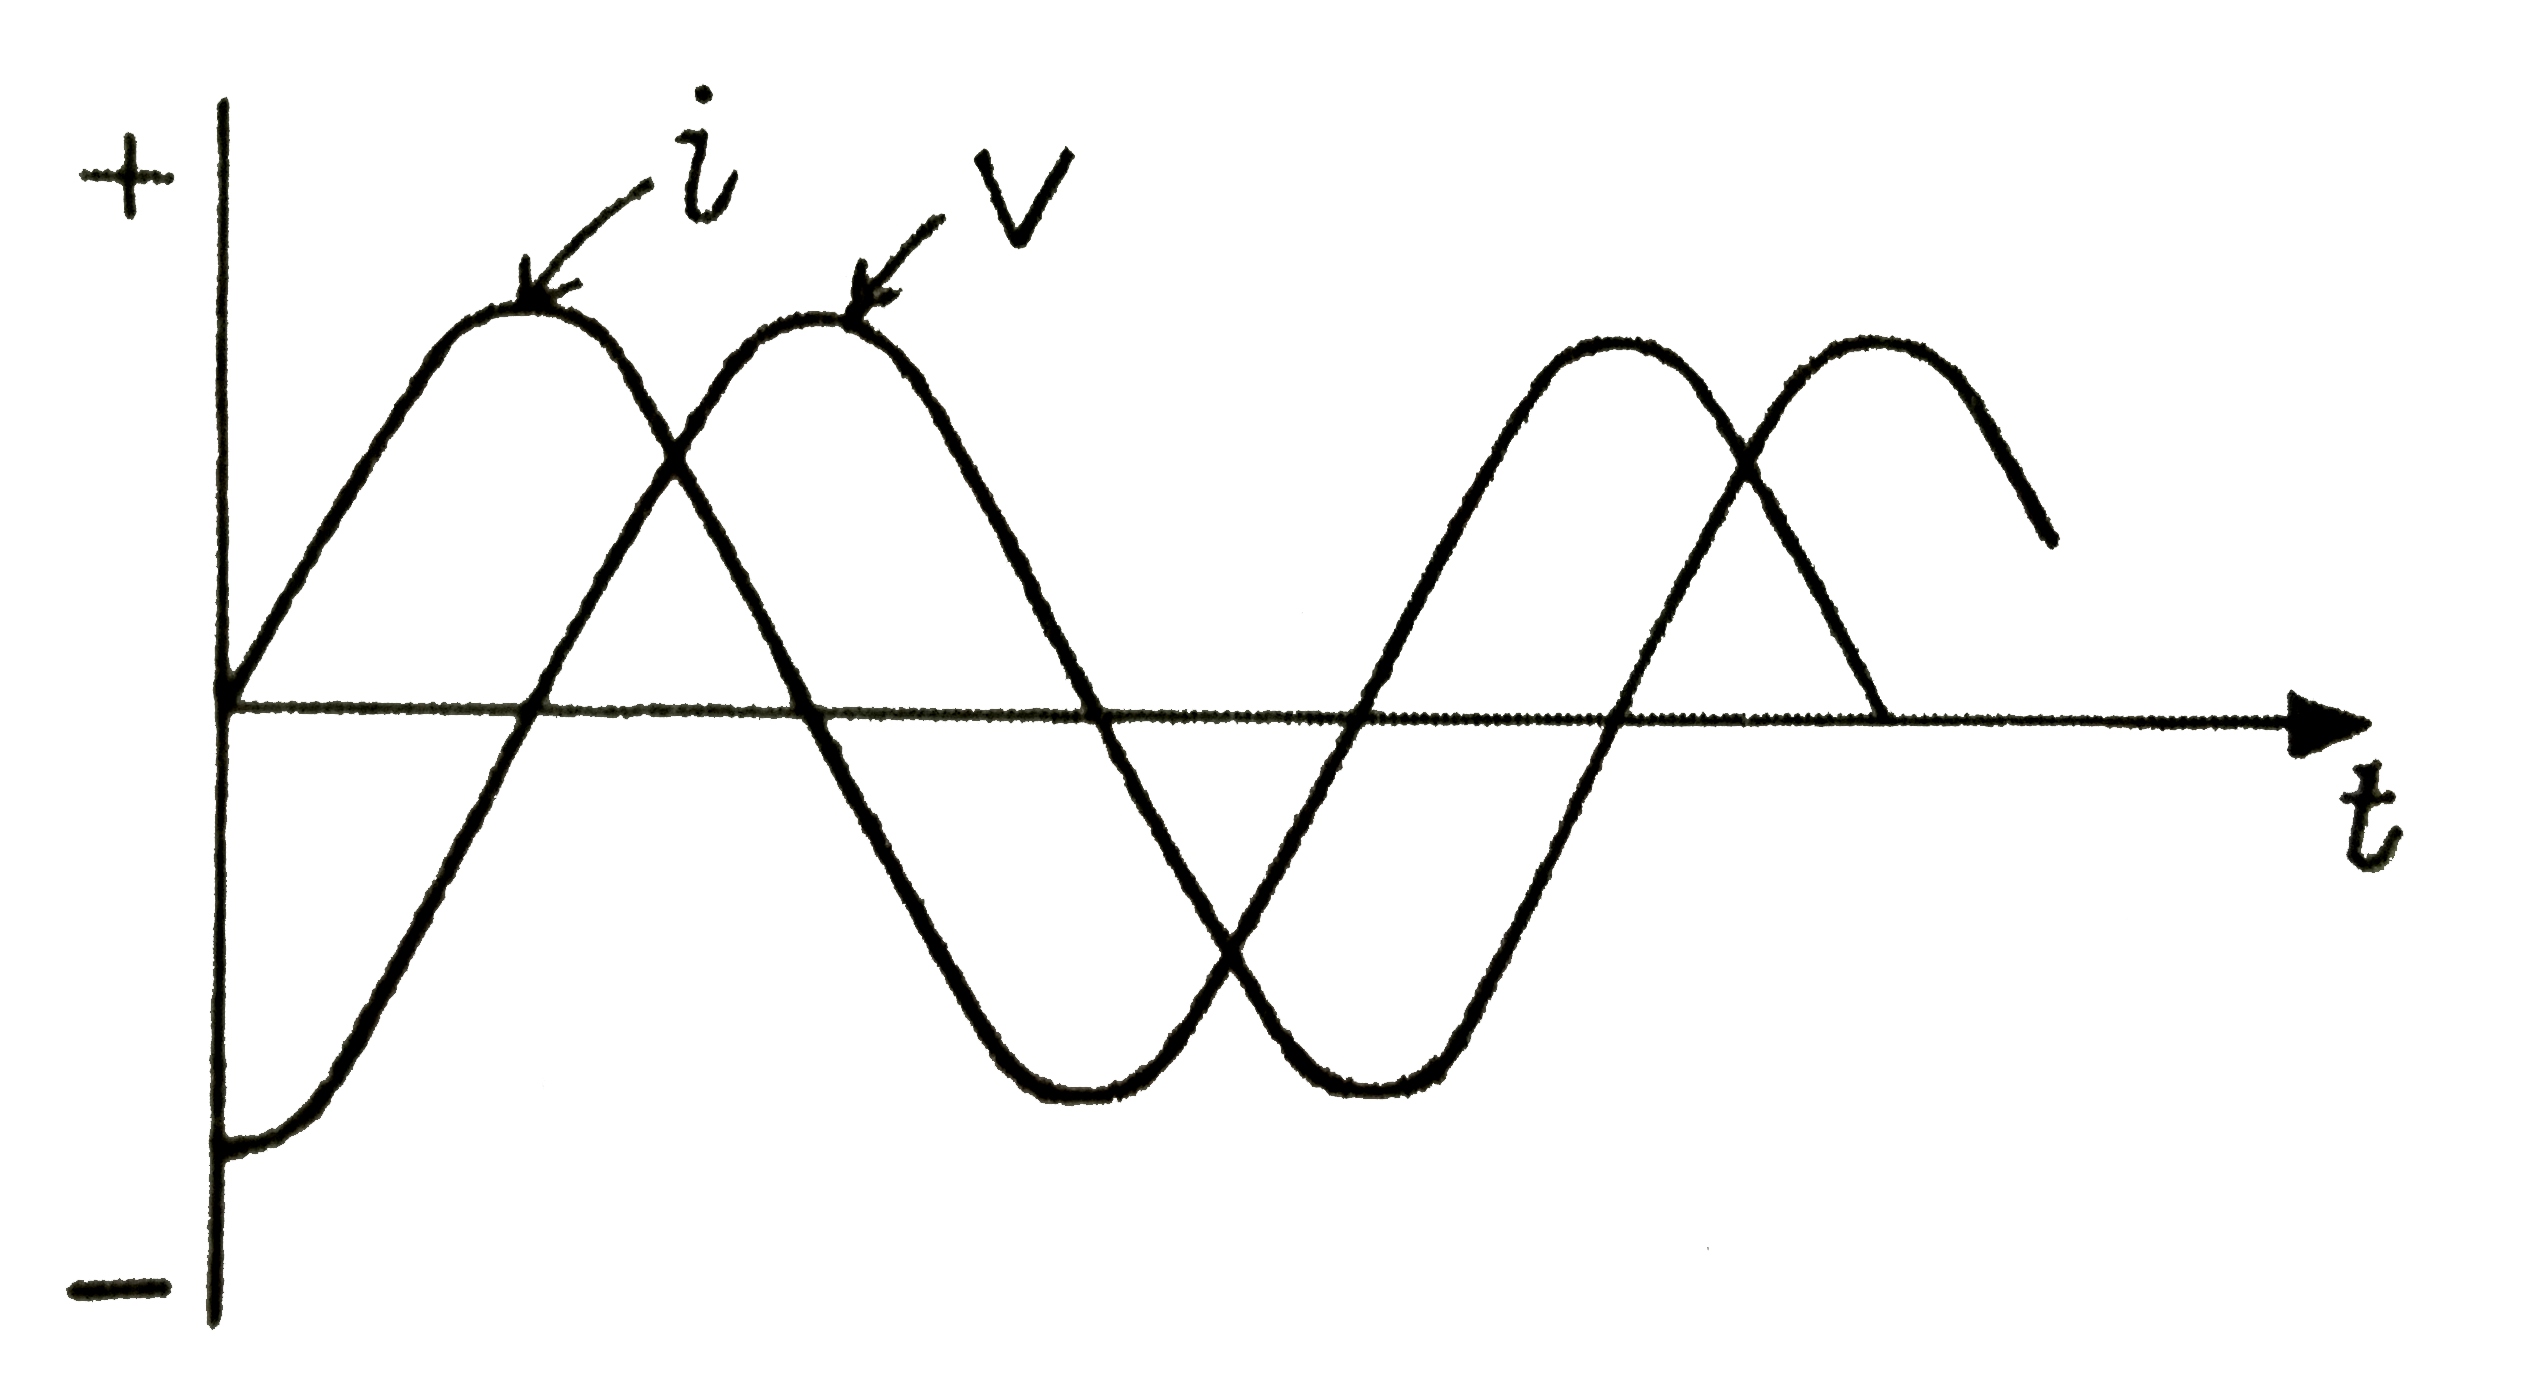 जब एक प्रत्यावर्ती वोल्टेज V = V(0) sin (100t) वोल्ट परिपथ में   लगाया जाता है, तो वोल्टेज V तथा धारा i मे कलान्तर pi//4 पाया जाता है, जैसा कि चित्र में दर्शाया गया है। यदि परियथ सम्भवत: श्रेणीक्रम में है, तो दोनों अवयवों के बीच सम्बन्ध है :